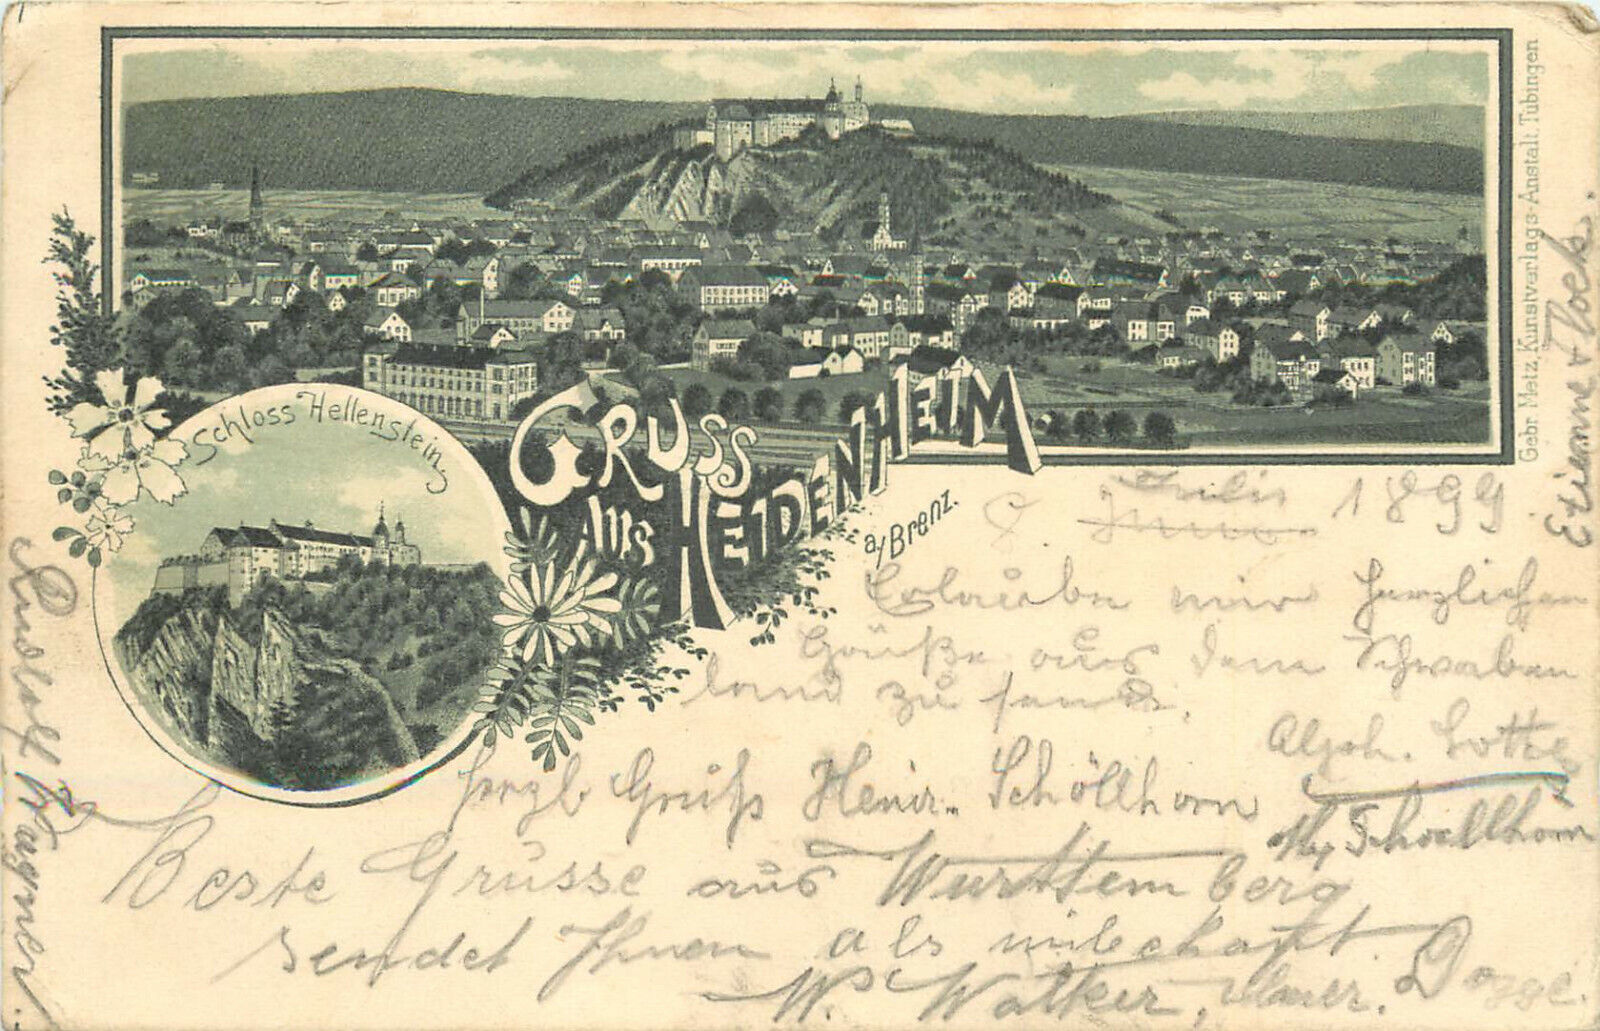 Gruss Aus Heidenheim an der Brenz Baden-Württemberg Germany 1899